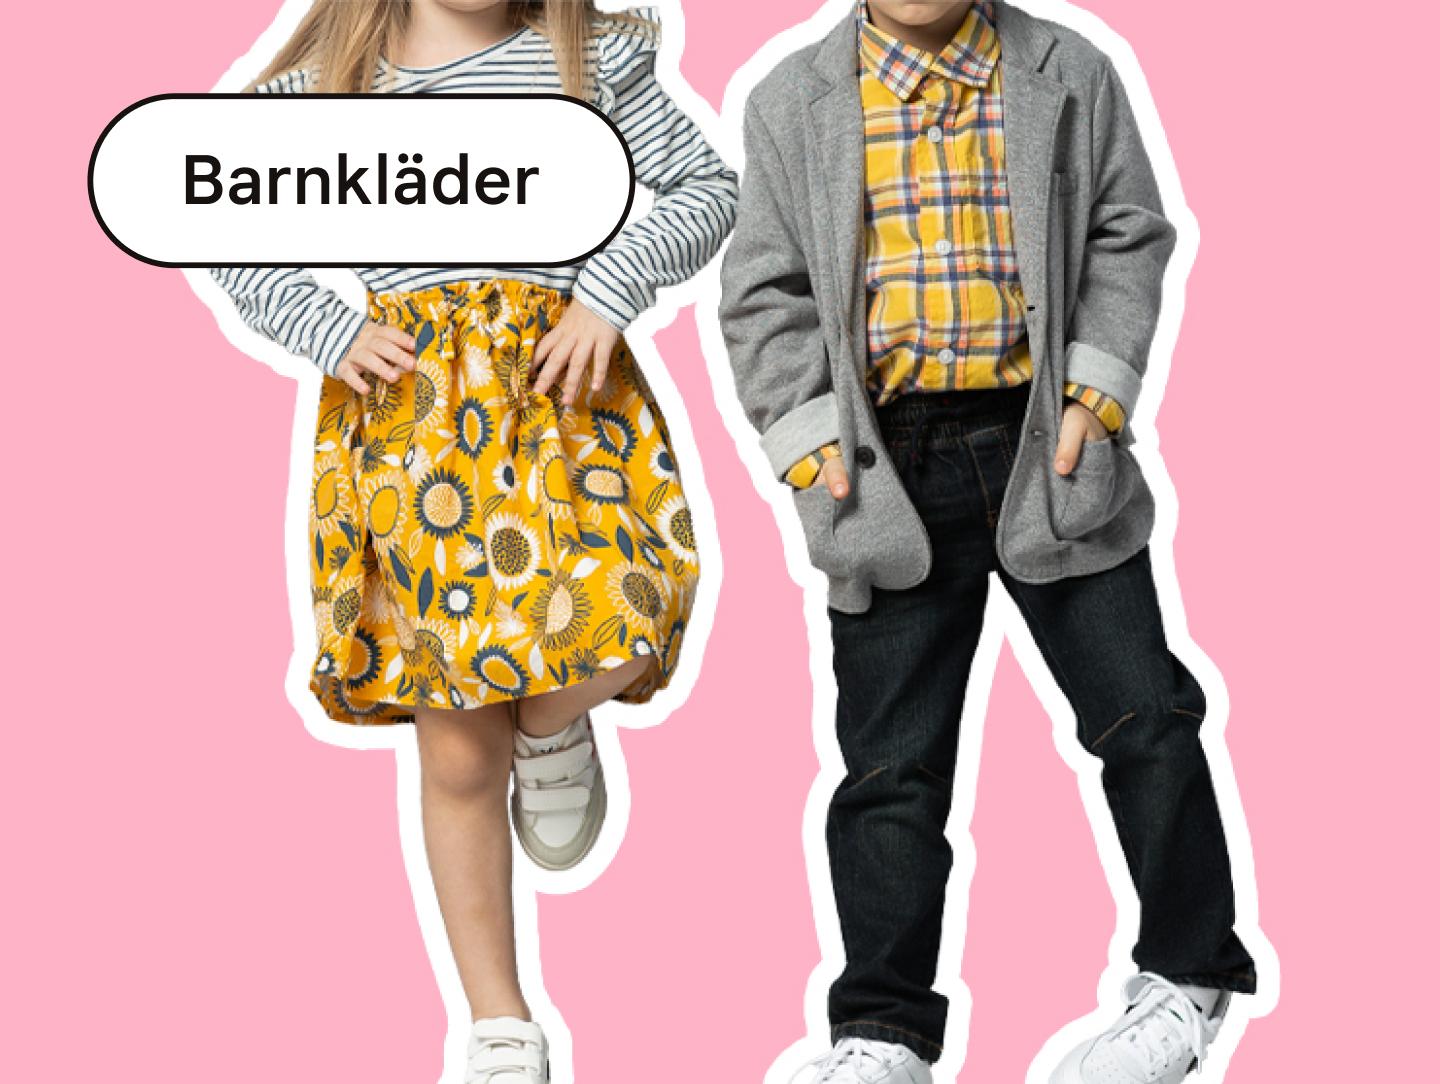 SE - Children's clothes